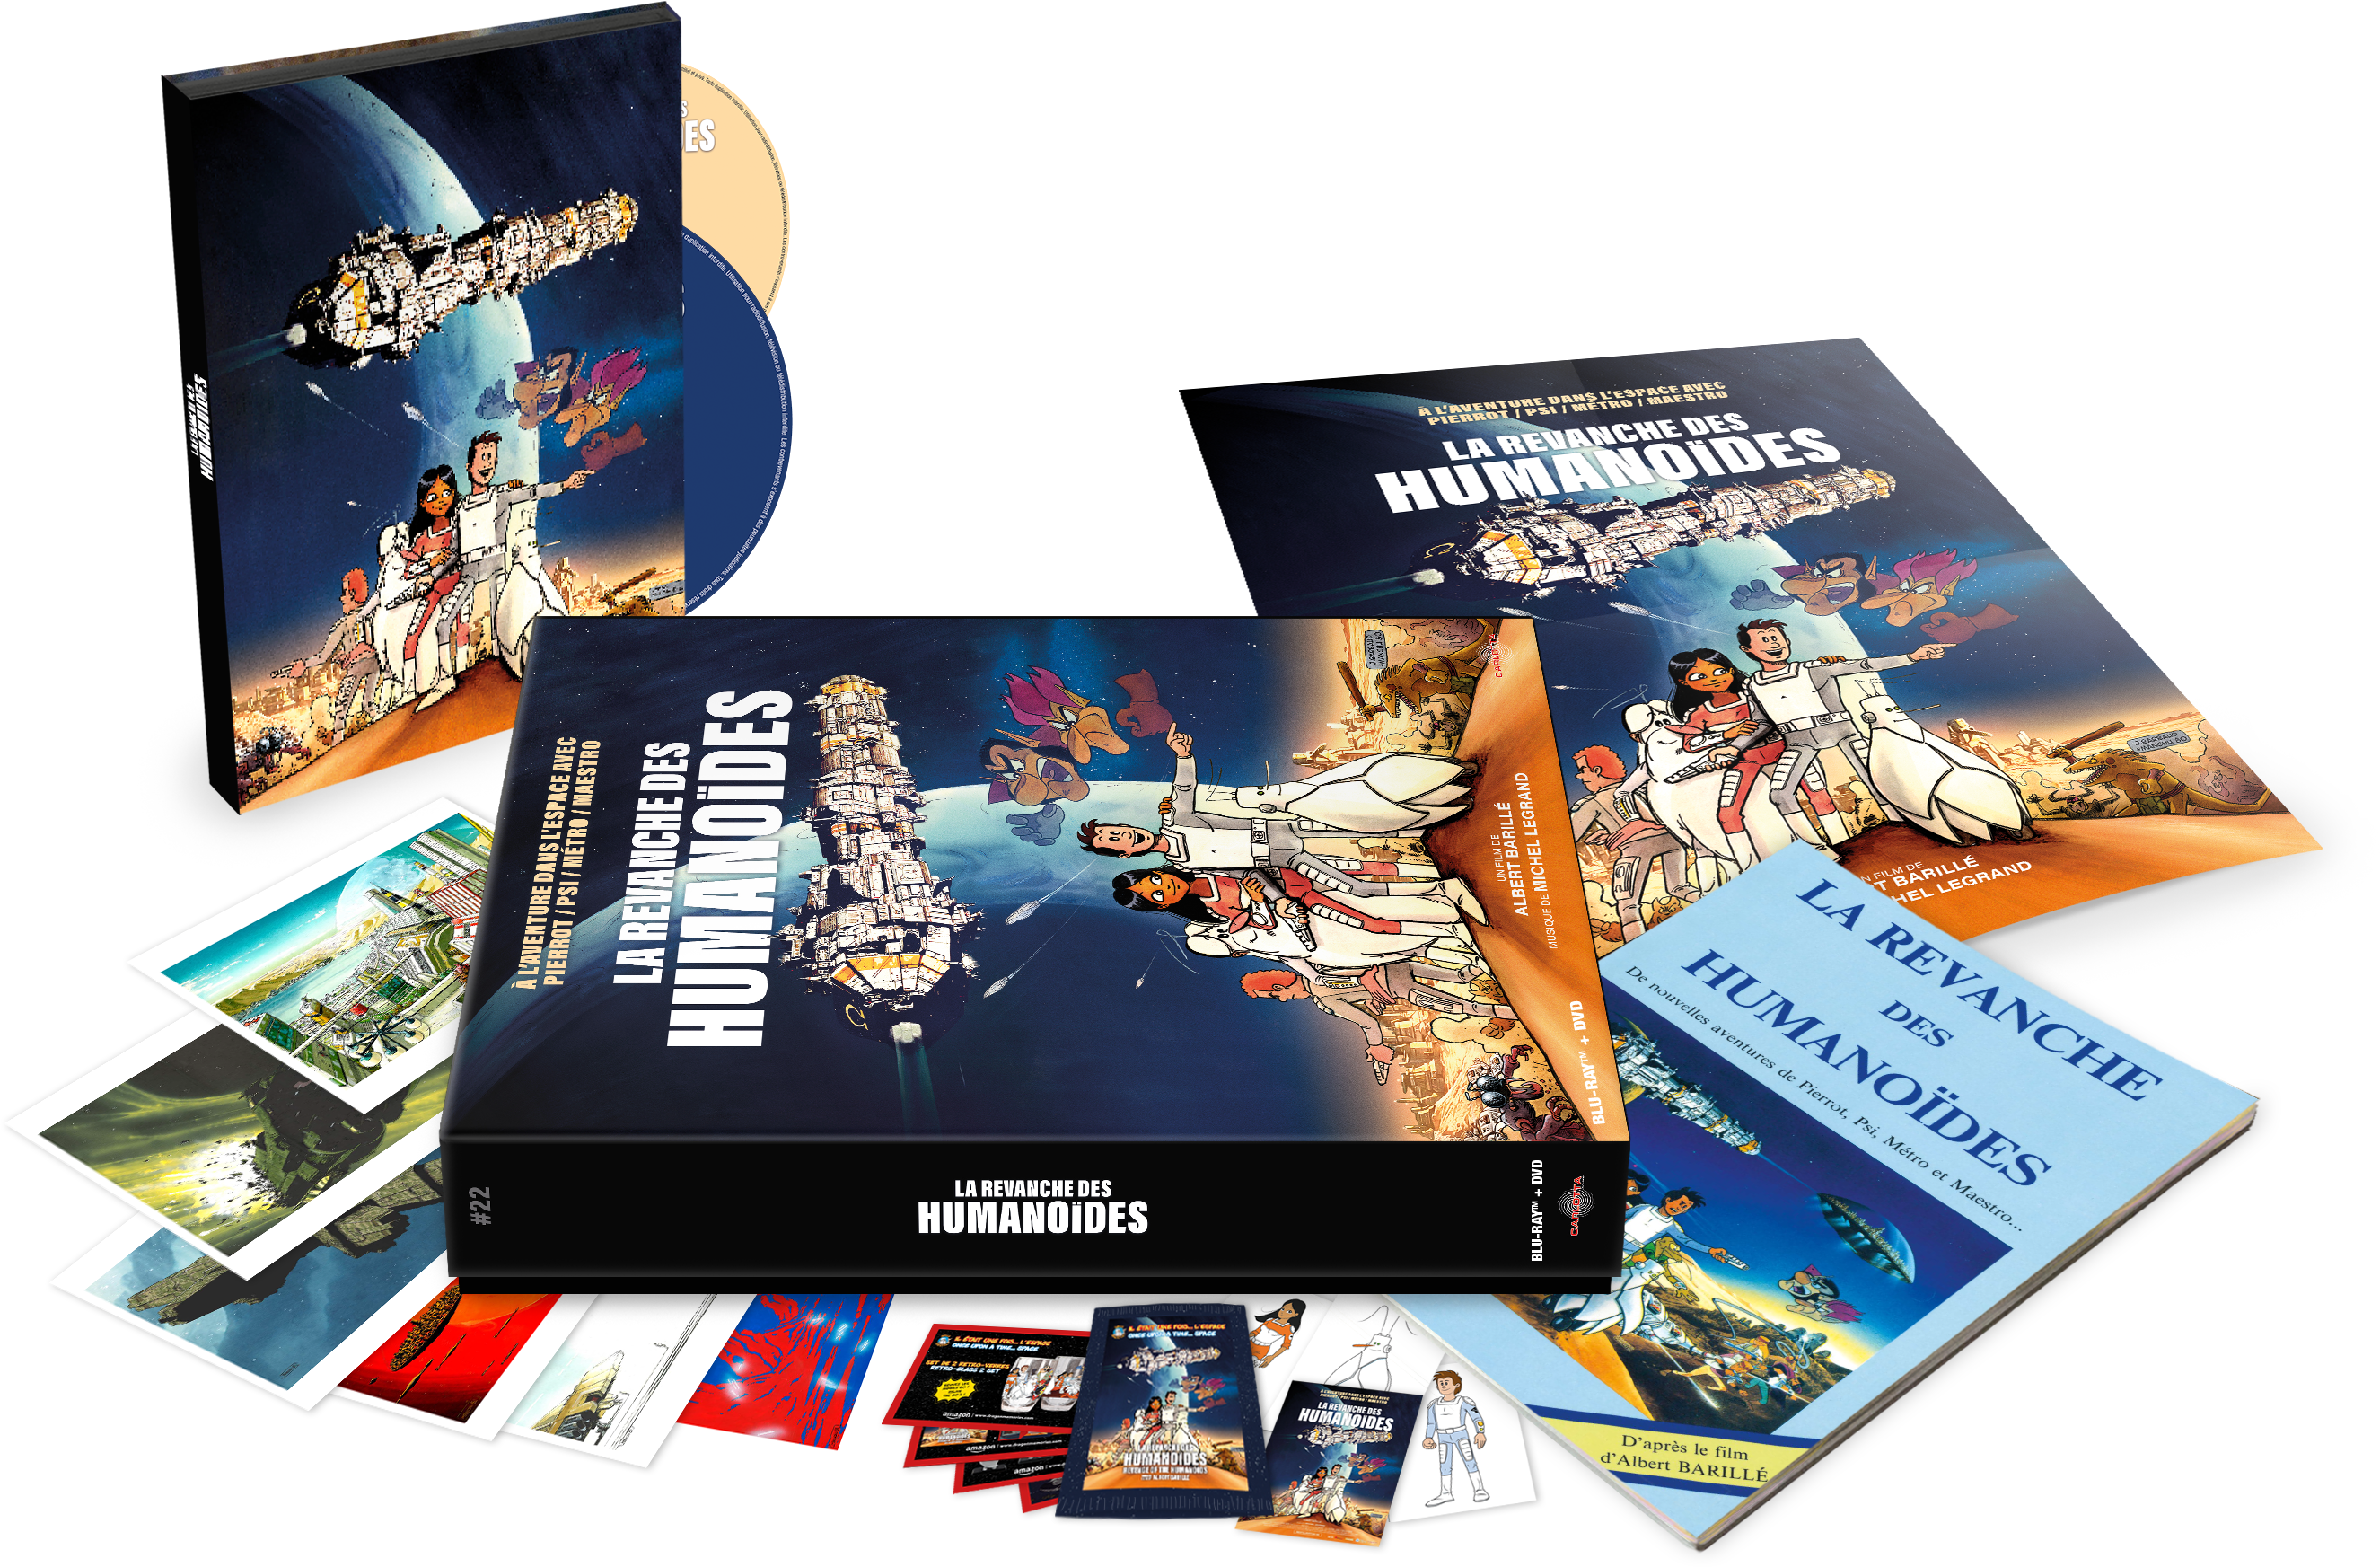 La Revanche des humanoïdes - Édition Prestige Limitée Combo Blu-ray + DVD + Memorabilia